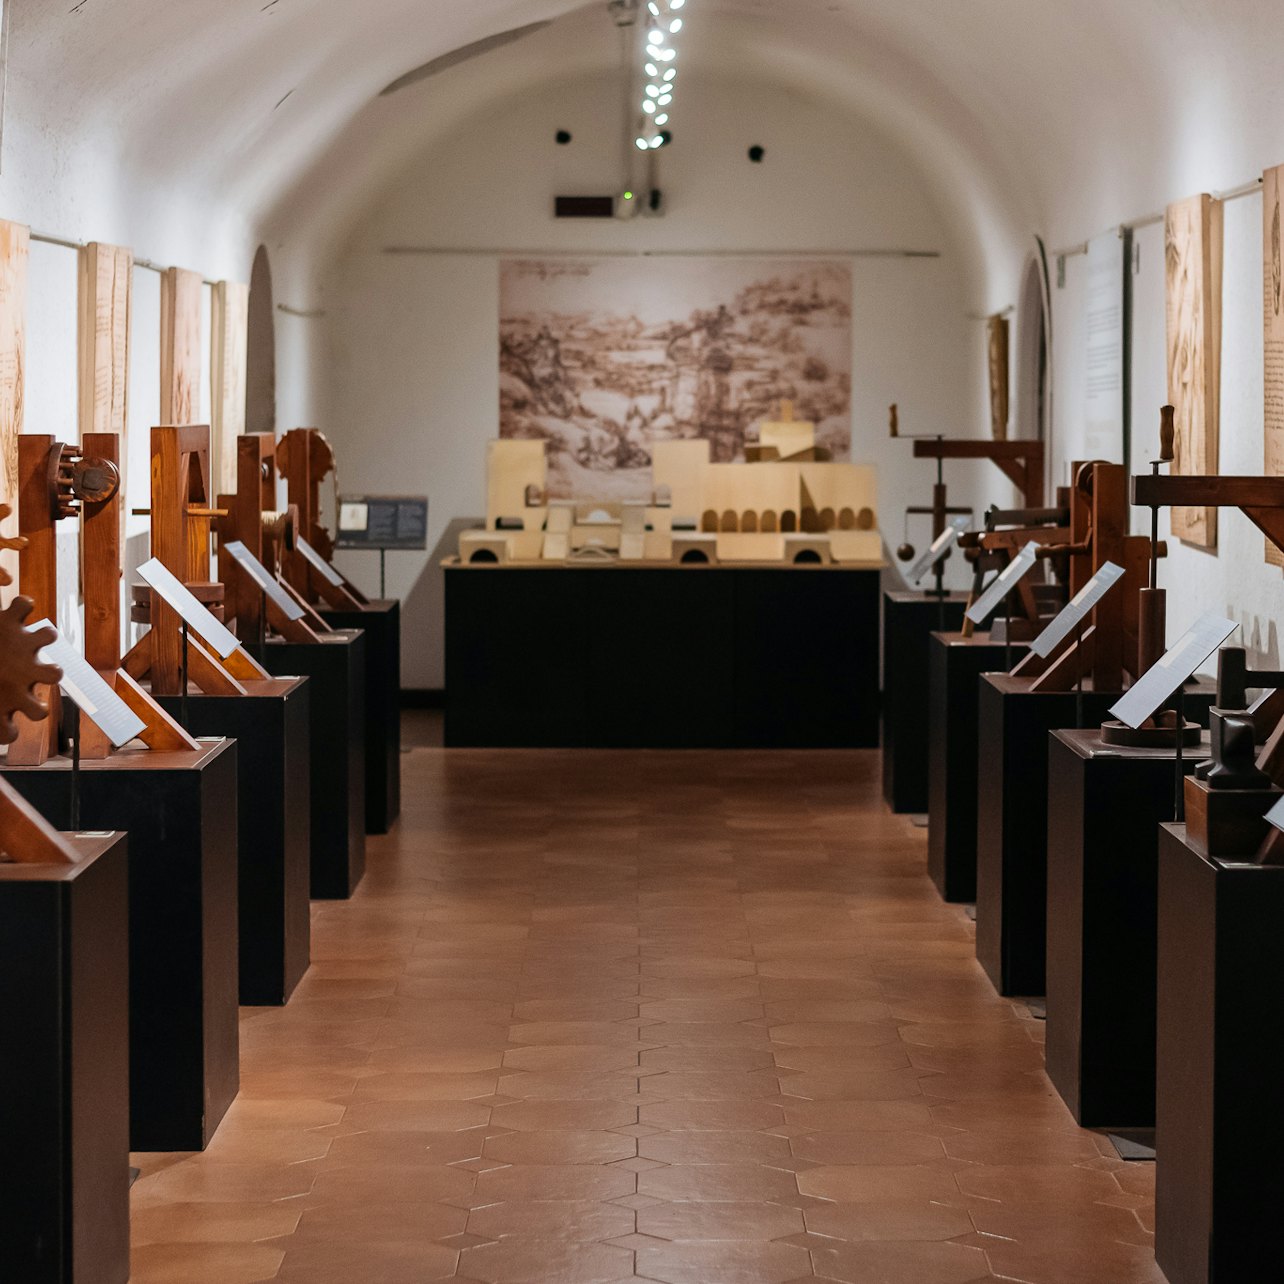 Museu Leonardo da Vinci - Acomodações em Roma